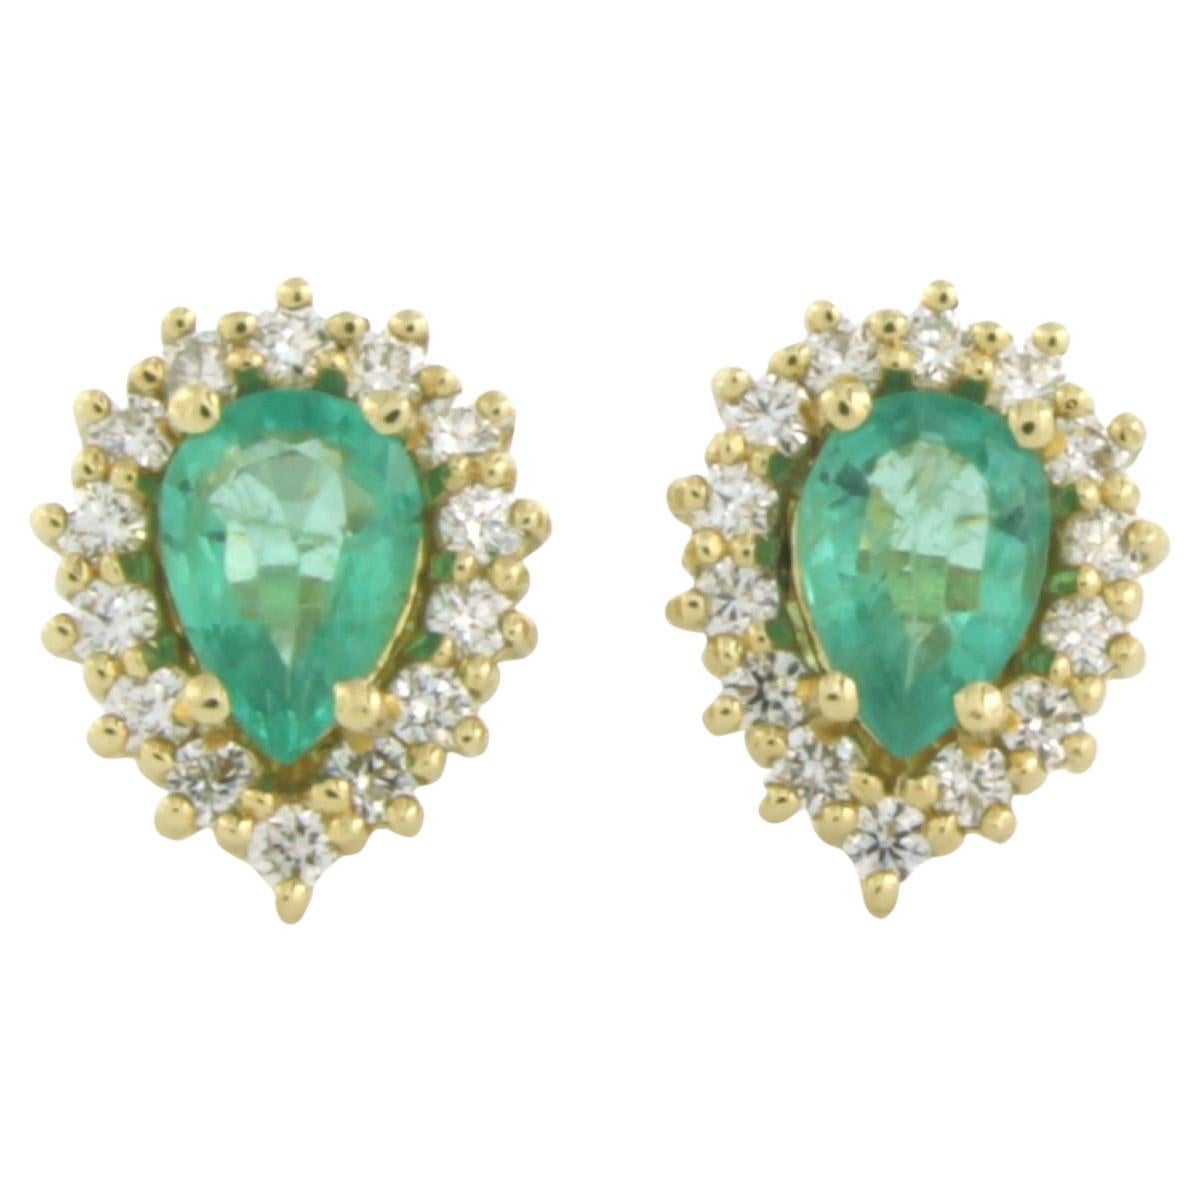 Ohrringe mit Smaragd bis zu 1,10ct und Diamanten bis zu 0,50ct 18k Gelbgold besetzt